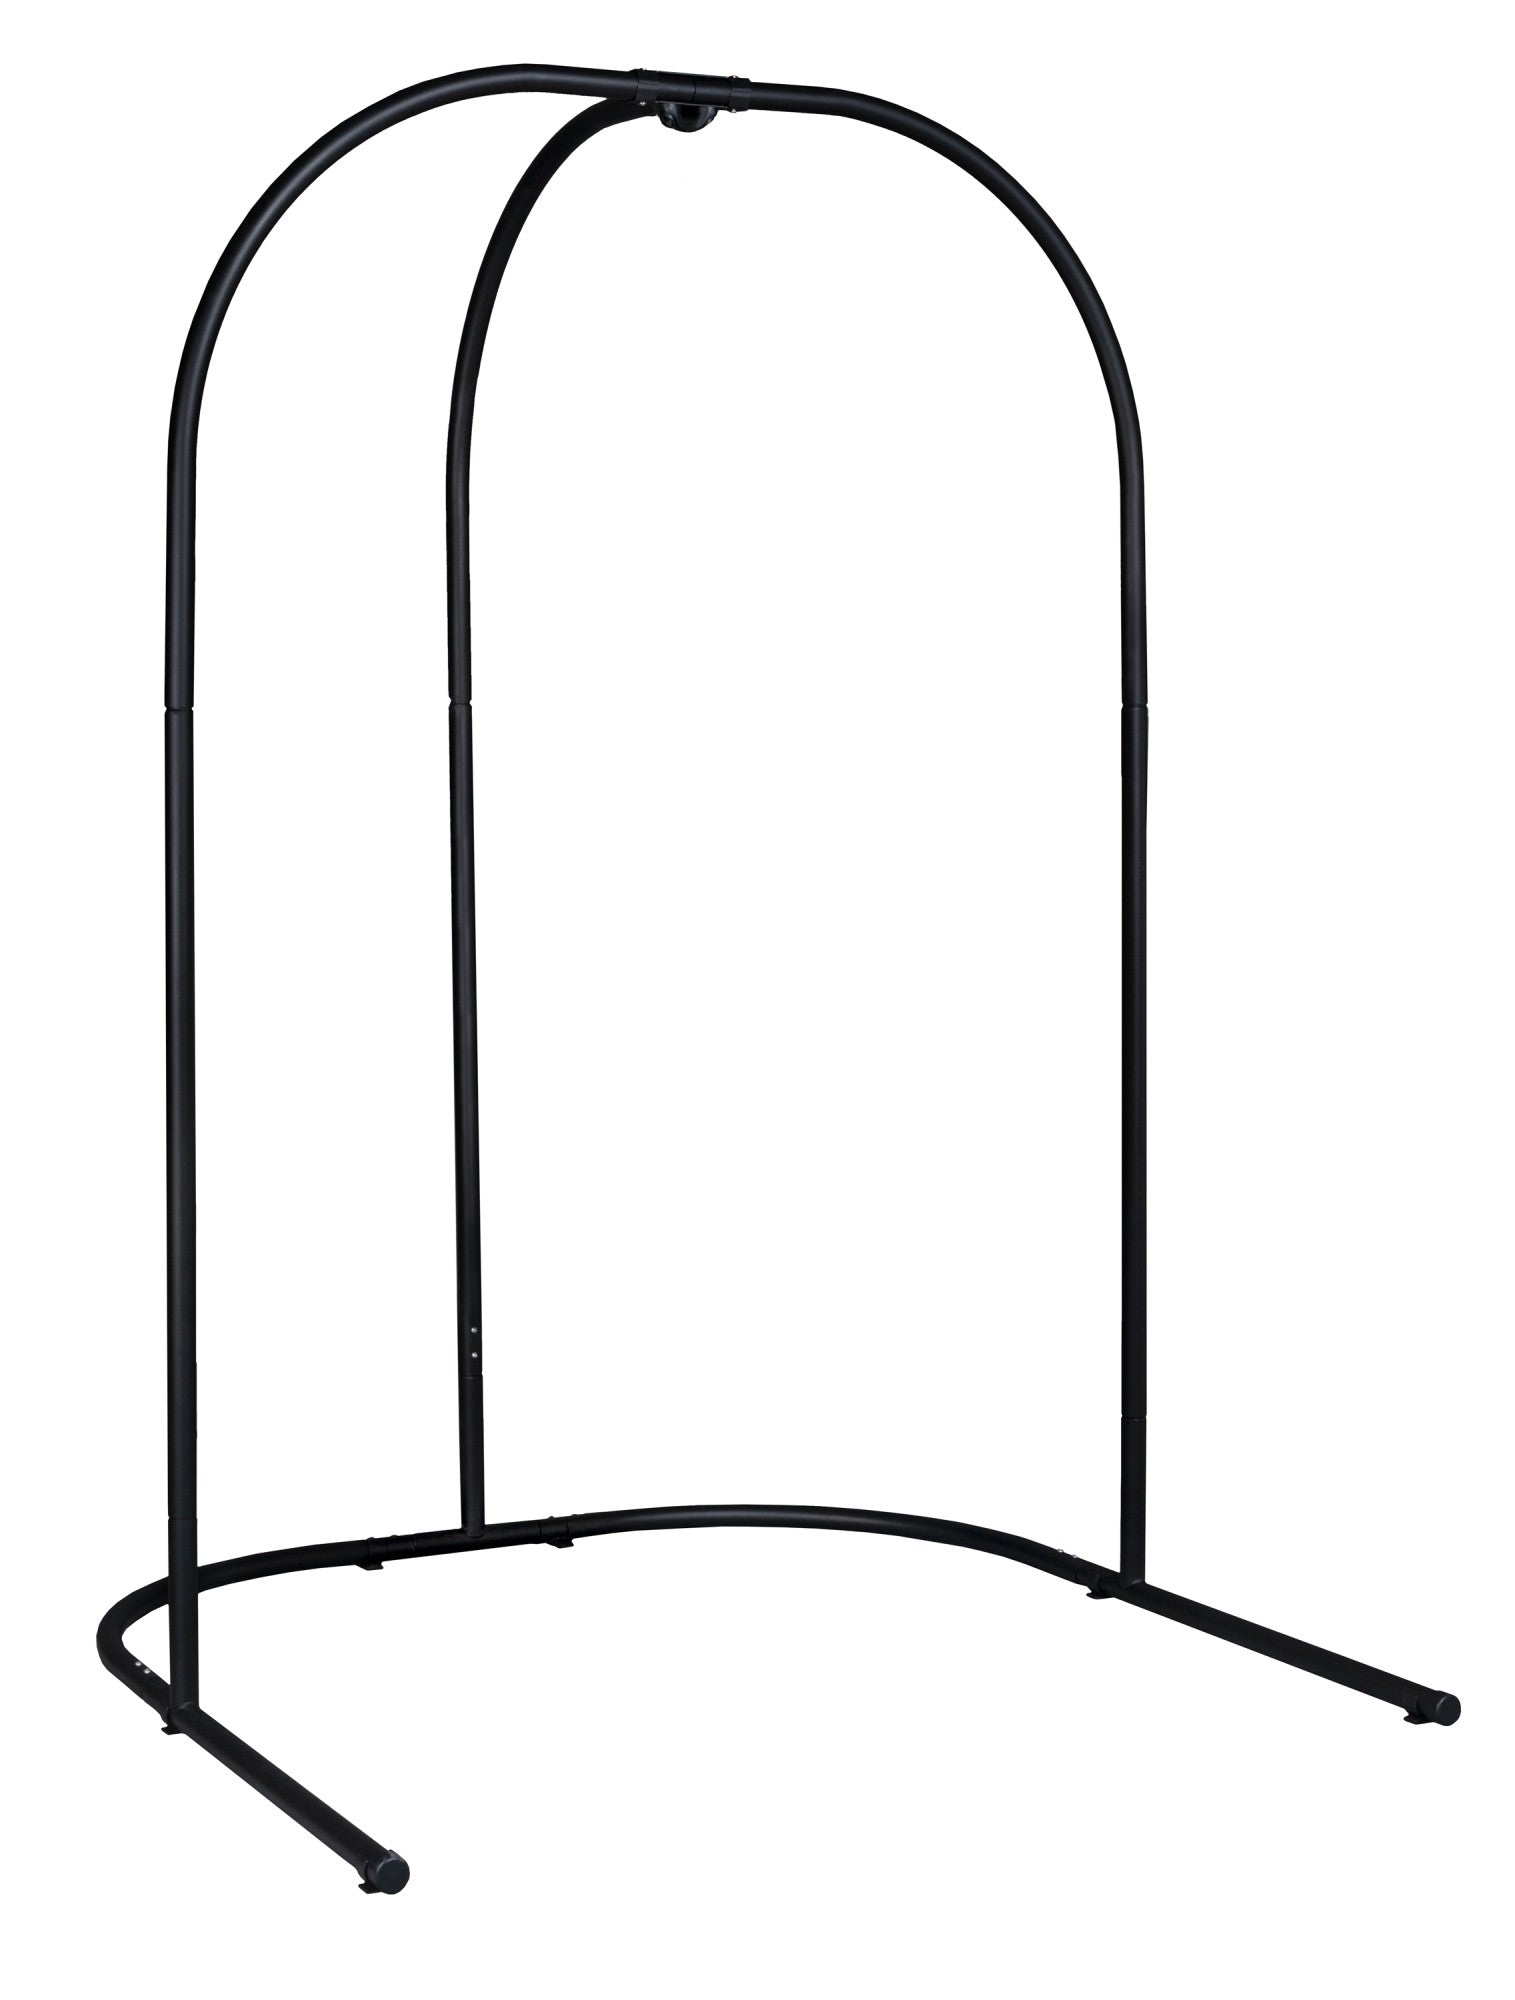 Arcada Anthracite - Support en acier galvanisé pour chaise-hamacs et nids-hamacs